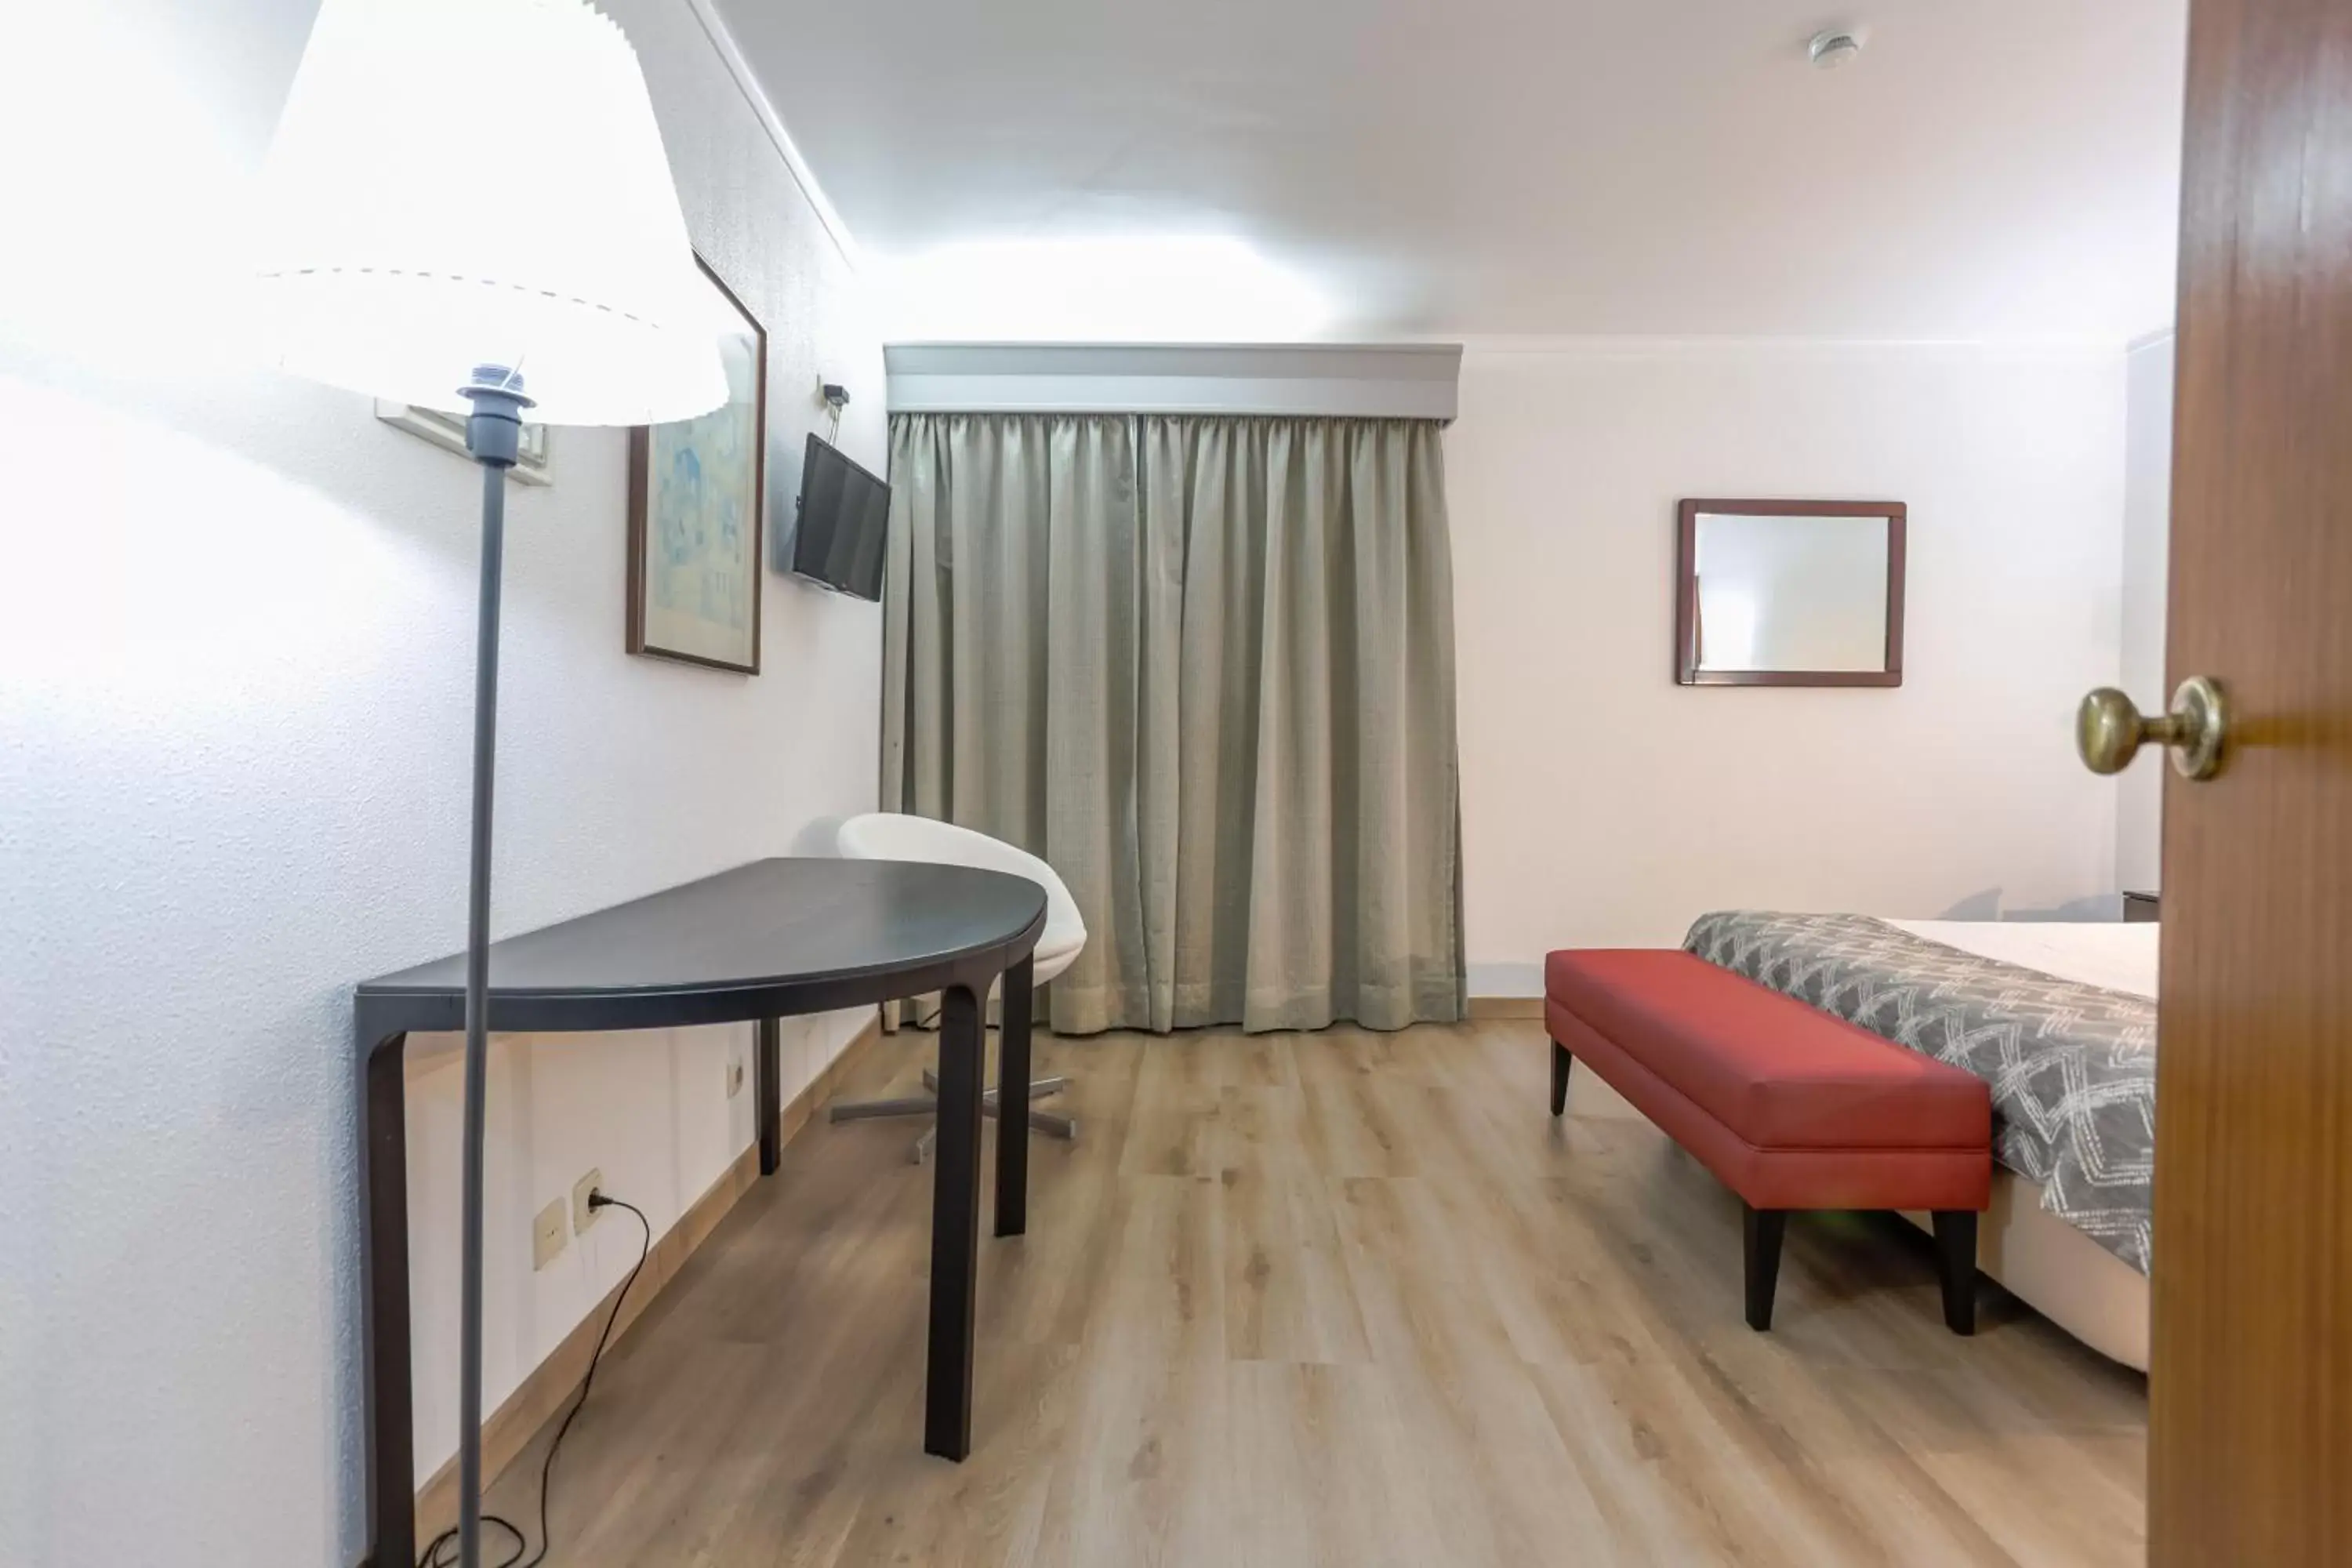 Bedroom in Hotel Arangues